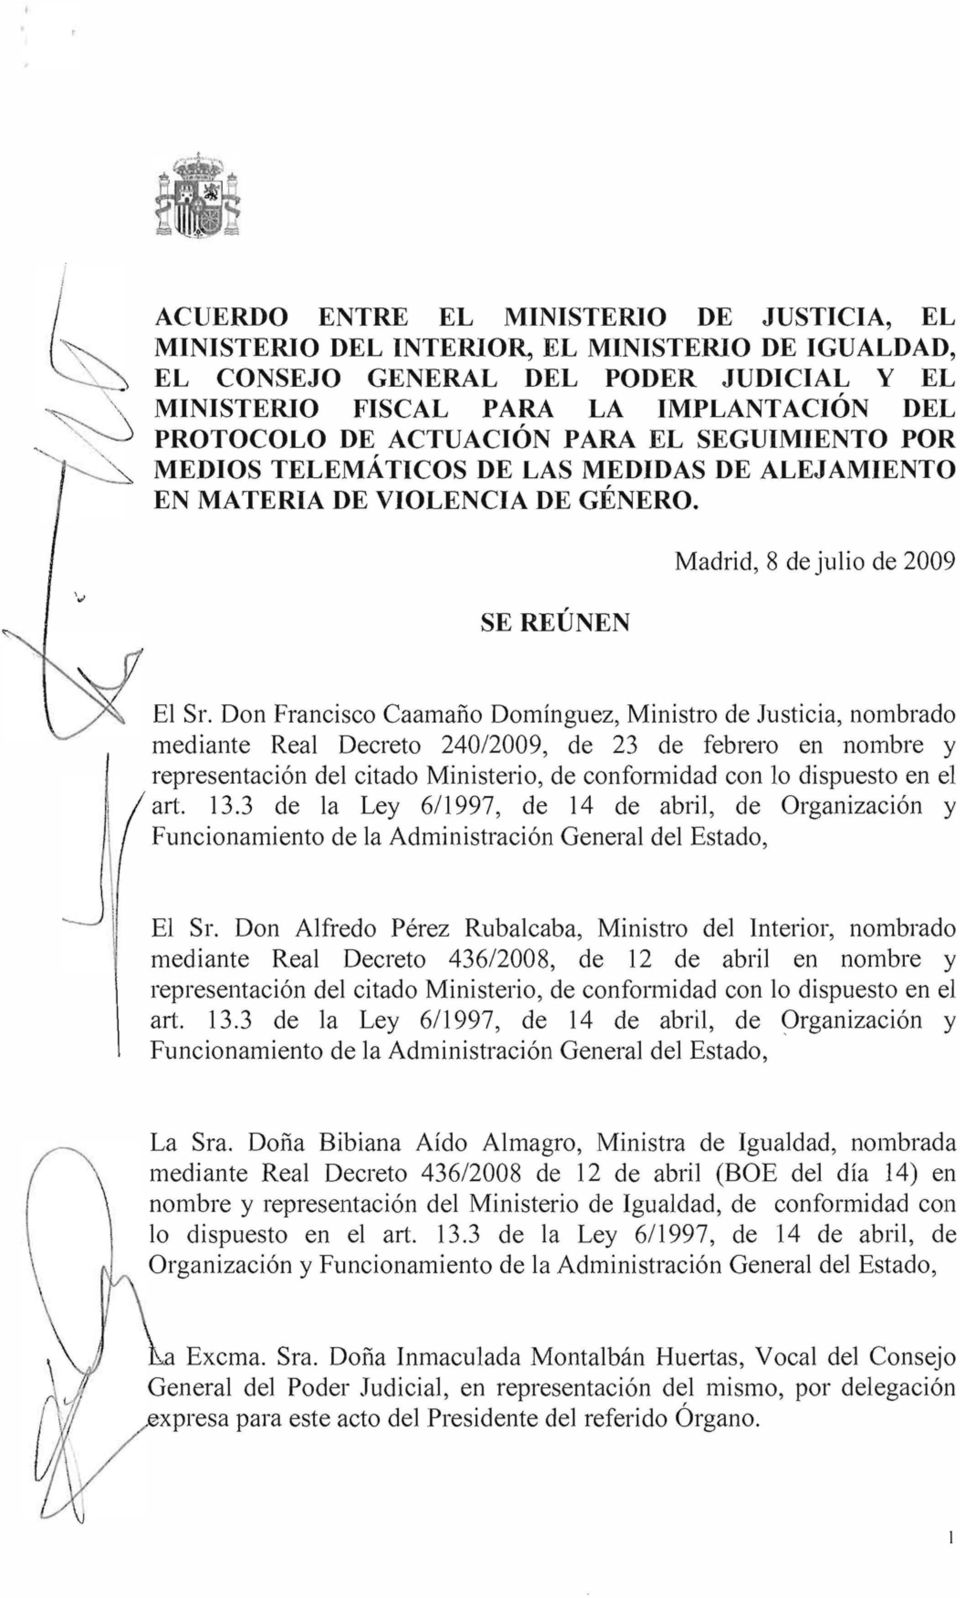 Don Francisco Caamaño Domínguez, Ministro de Justicia, nombrado mediante Real Decreto 240/2009, de 23 de febrero en nombre y representación del citado Ministerio, de confoffi1idad con lo dispuesto en